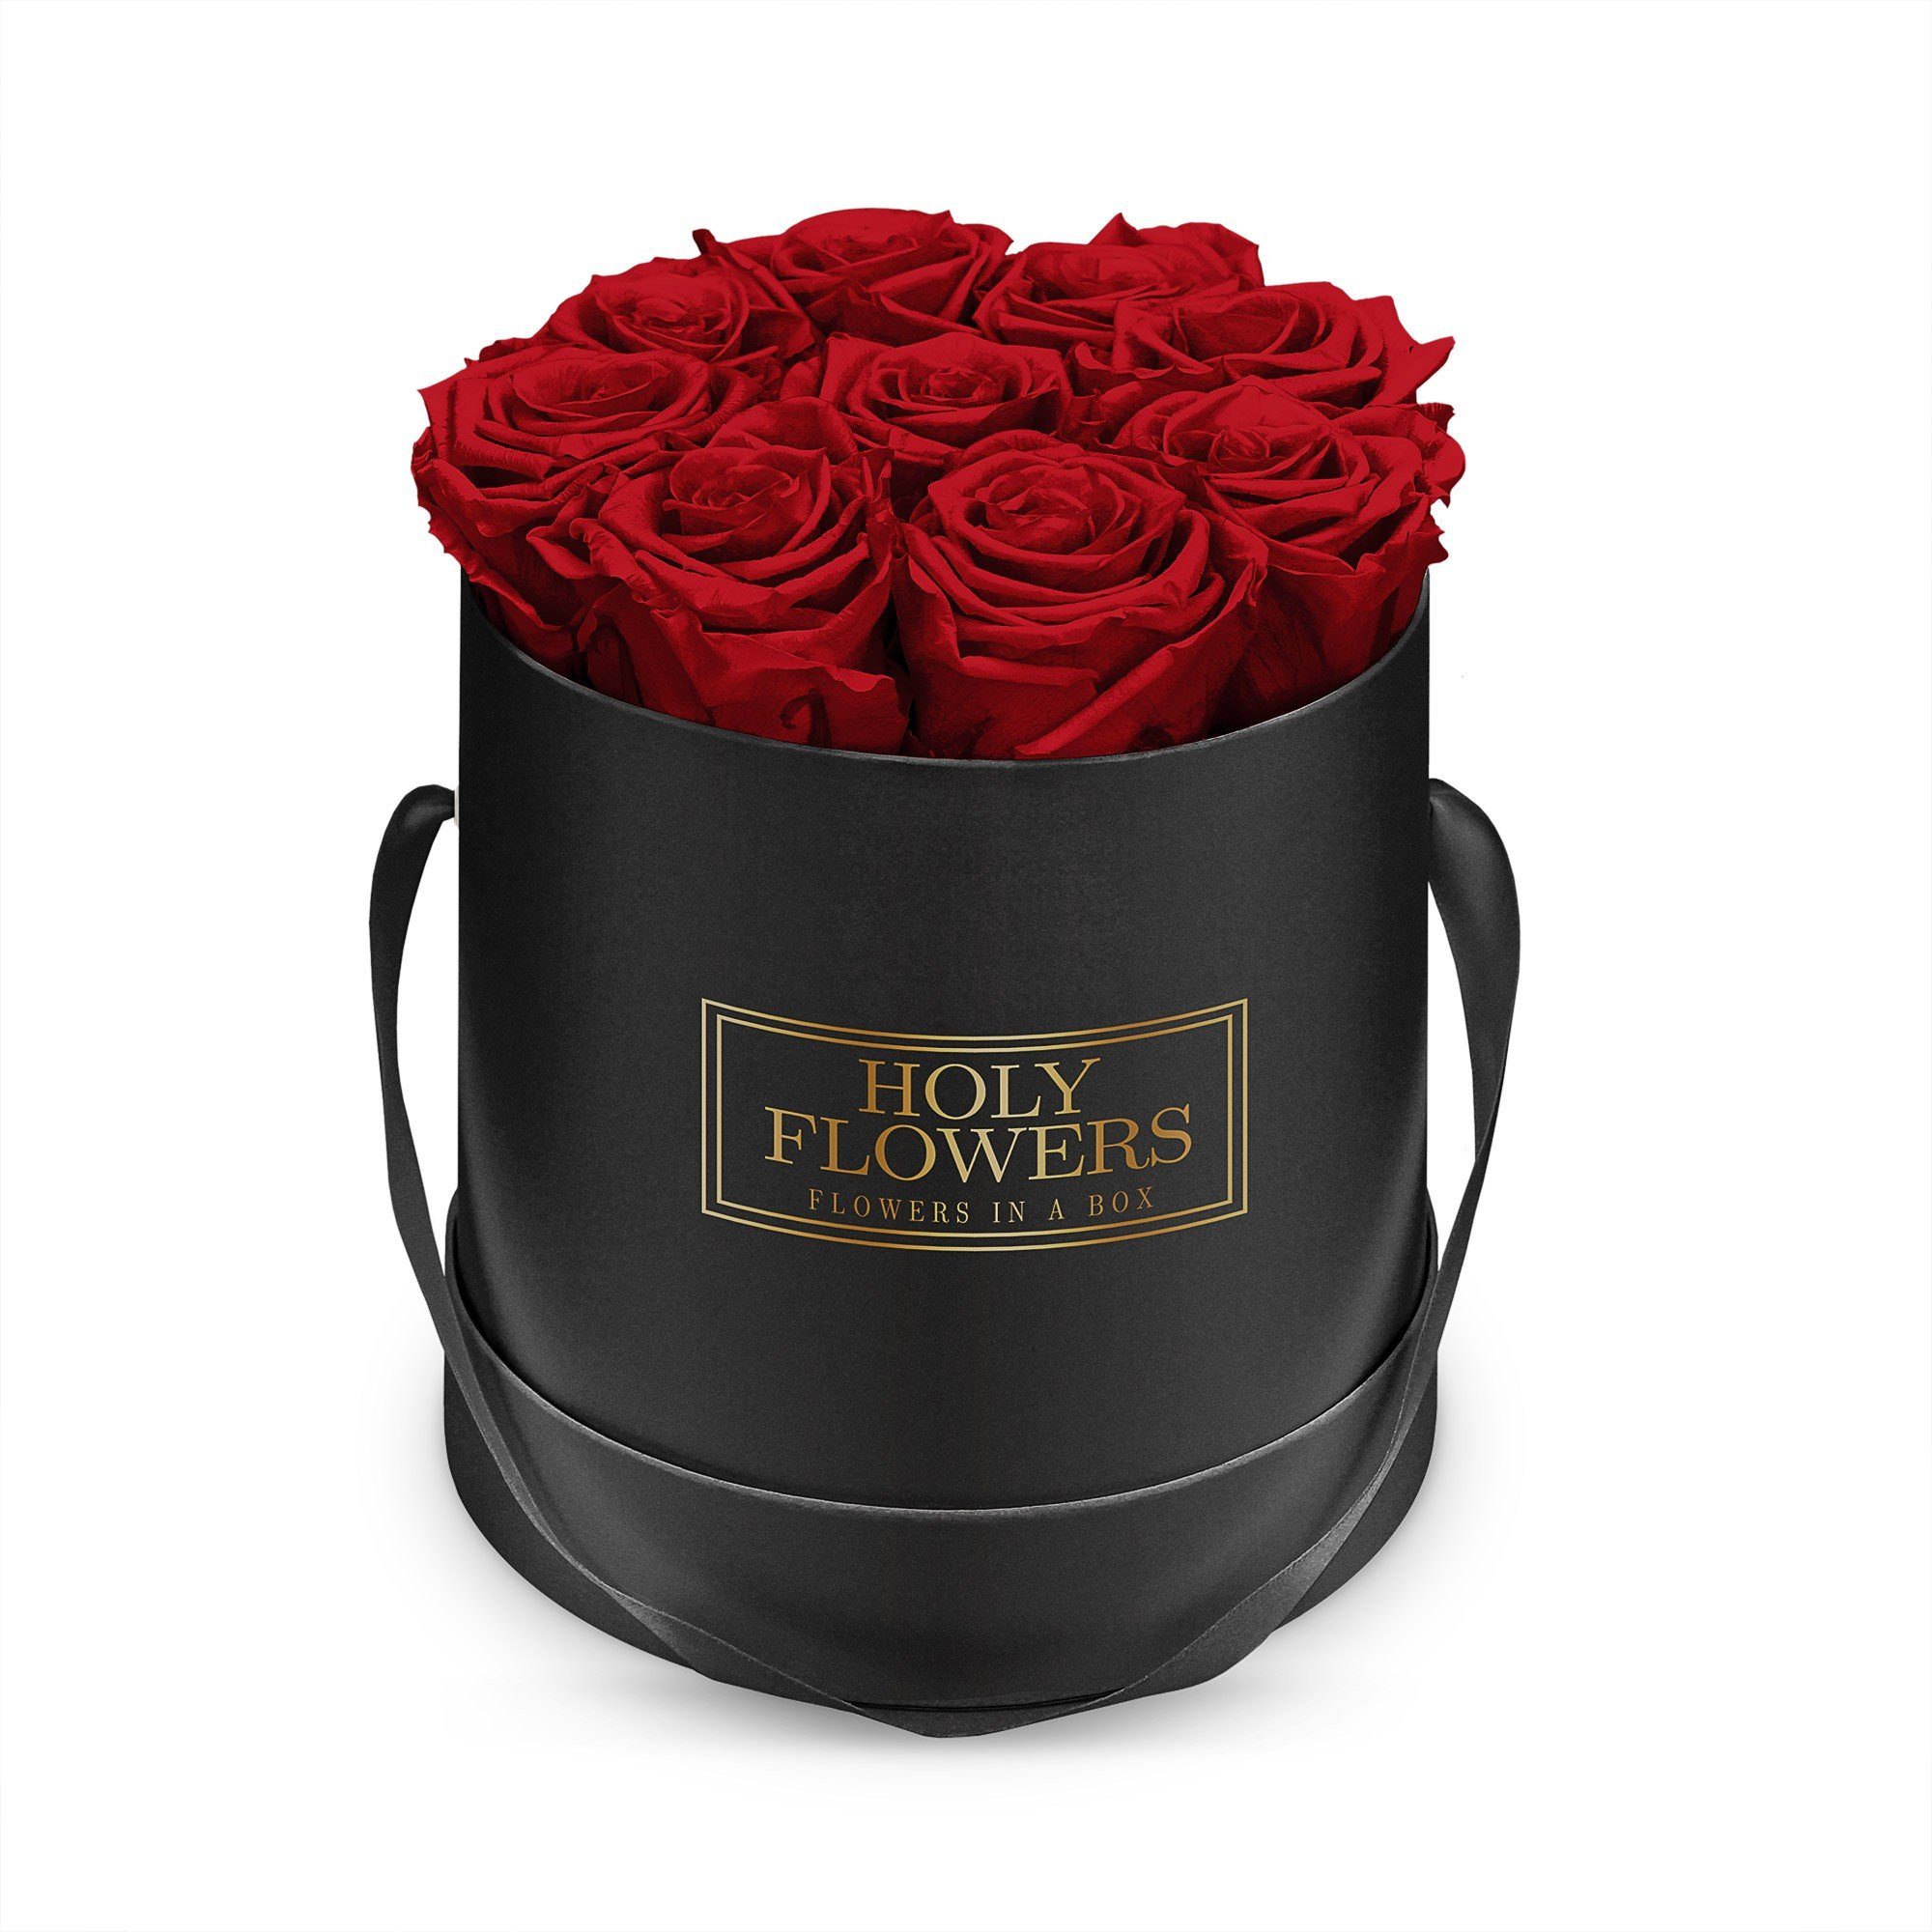 Kunstblume Runde Rosenbox in schwarz mit 8- 12 Infinity Rosen I 3 Jahre haltbar I Echte, duftende konservierte Blumen I by Raul Richter Infinity Rose, Holy Flowers, Höhe 14 cm Heritage Red